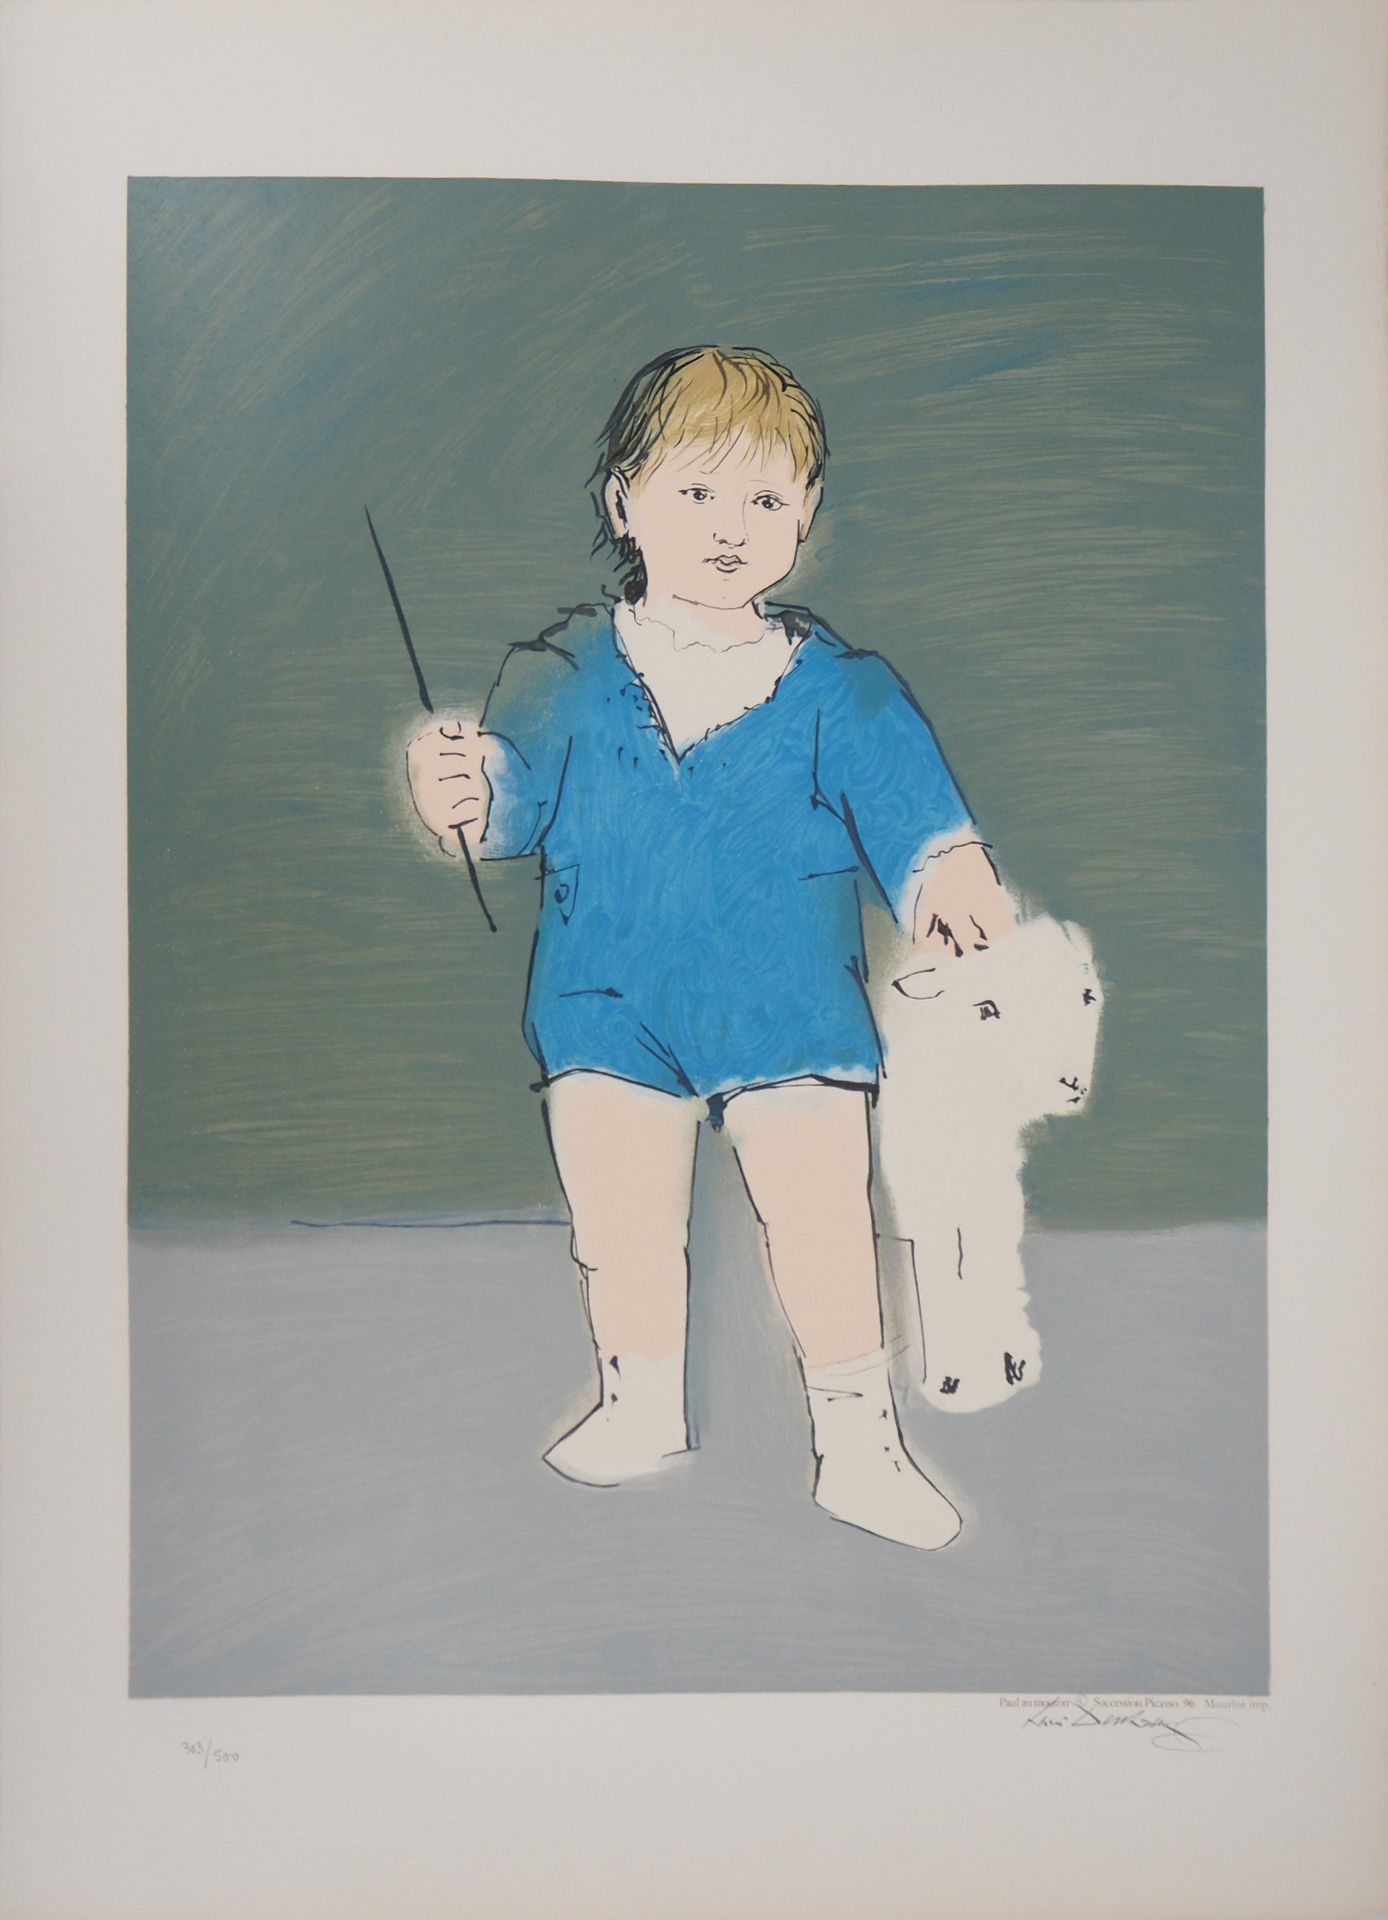 Pablo PICASSO 巴勃罗-皮卡索（后）

孩子和羔羊：小保罗-毕加索

根据毕加索的作品制作的彩色石版画

无符号

由平版印刷师亨利-德尚（他是毕加&hellip;